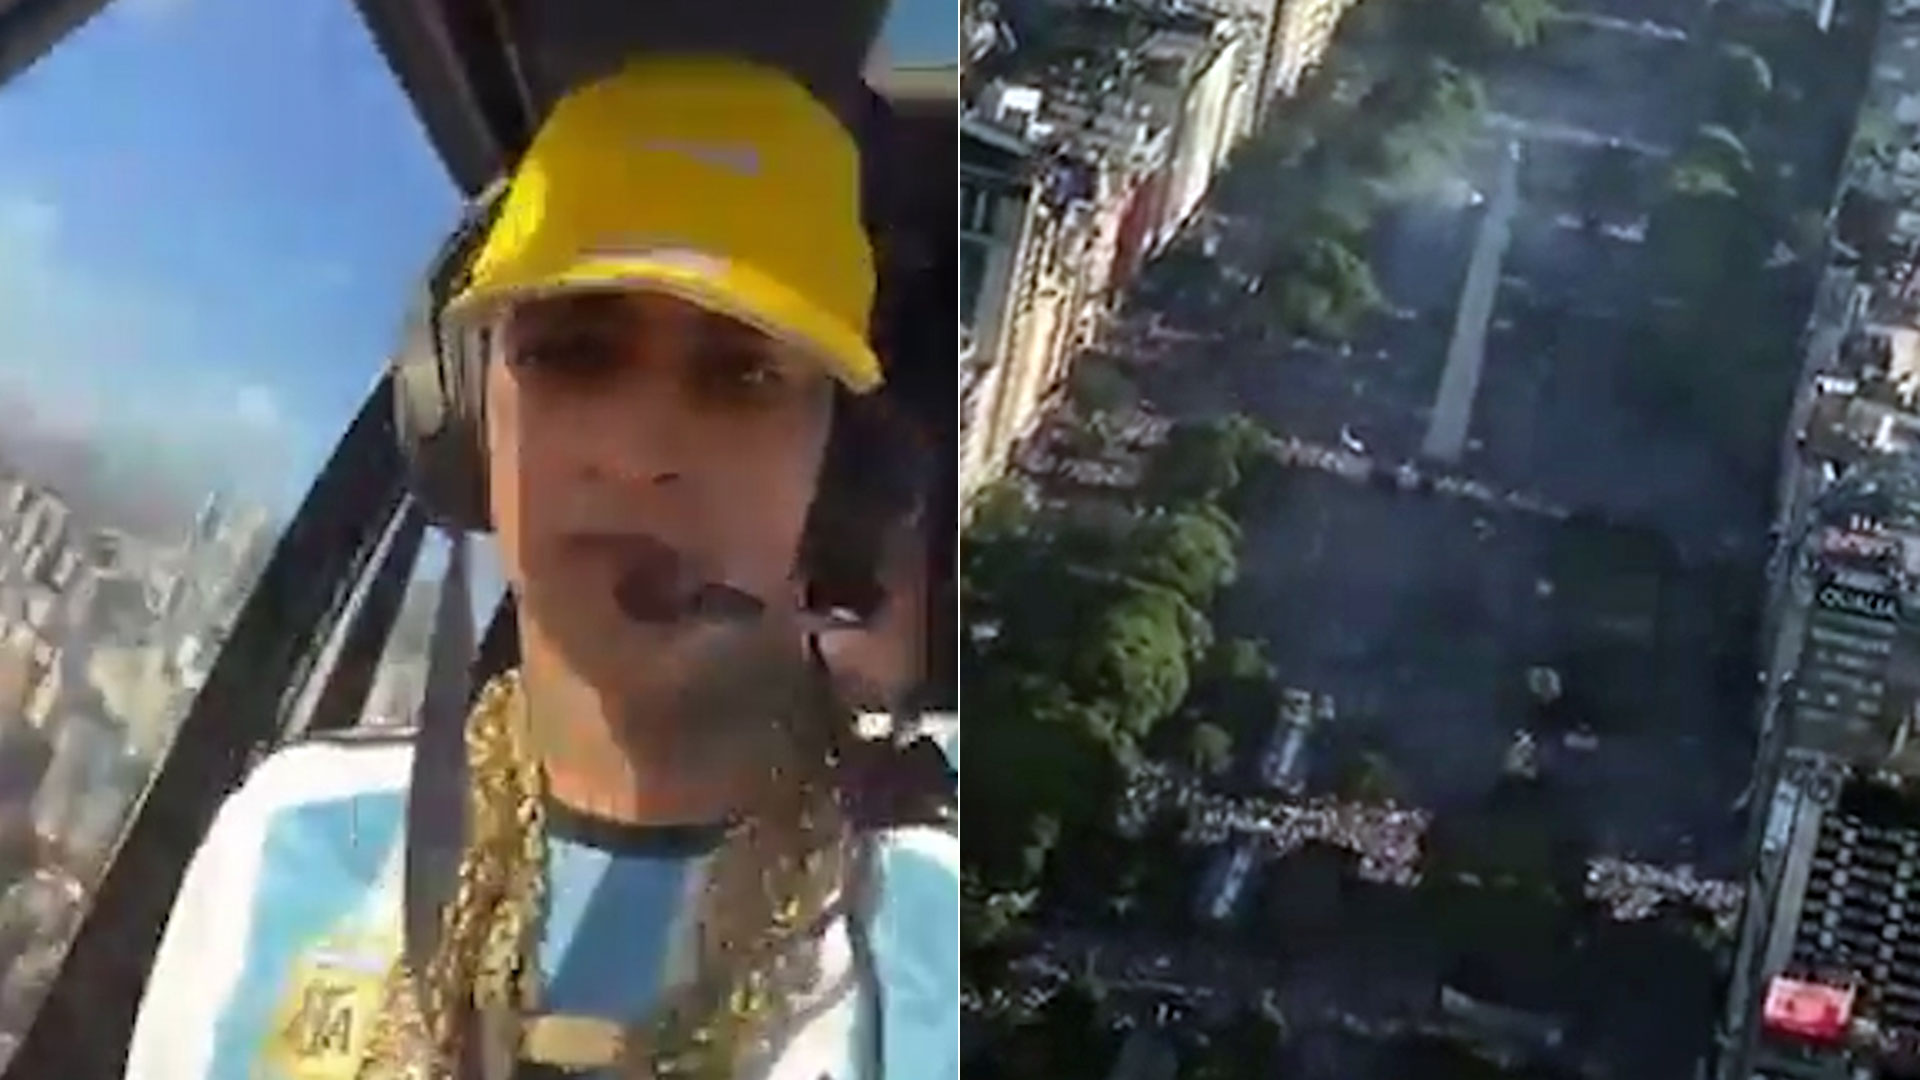 L-Gante sobrevoló los festejos en el obelisco desde un helicóptero: “Somos campeones”